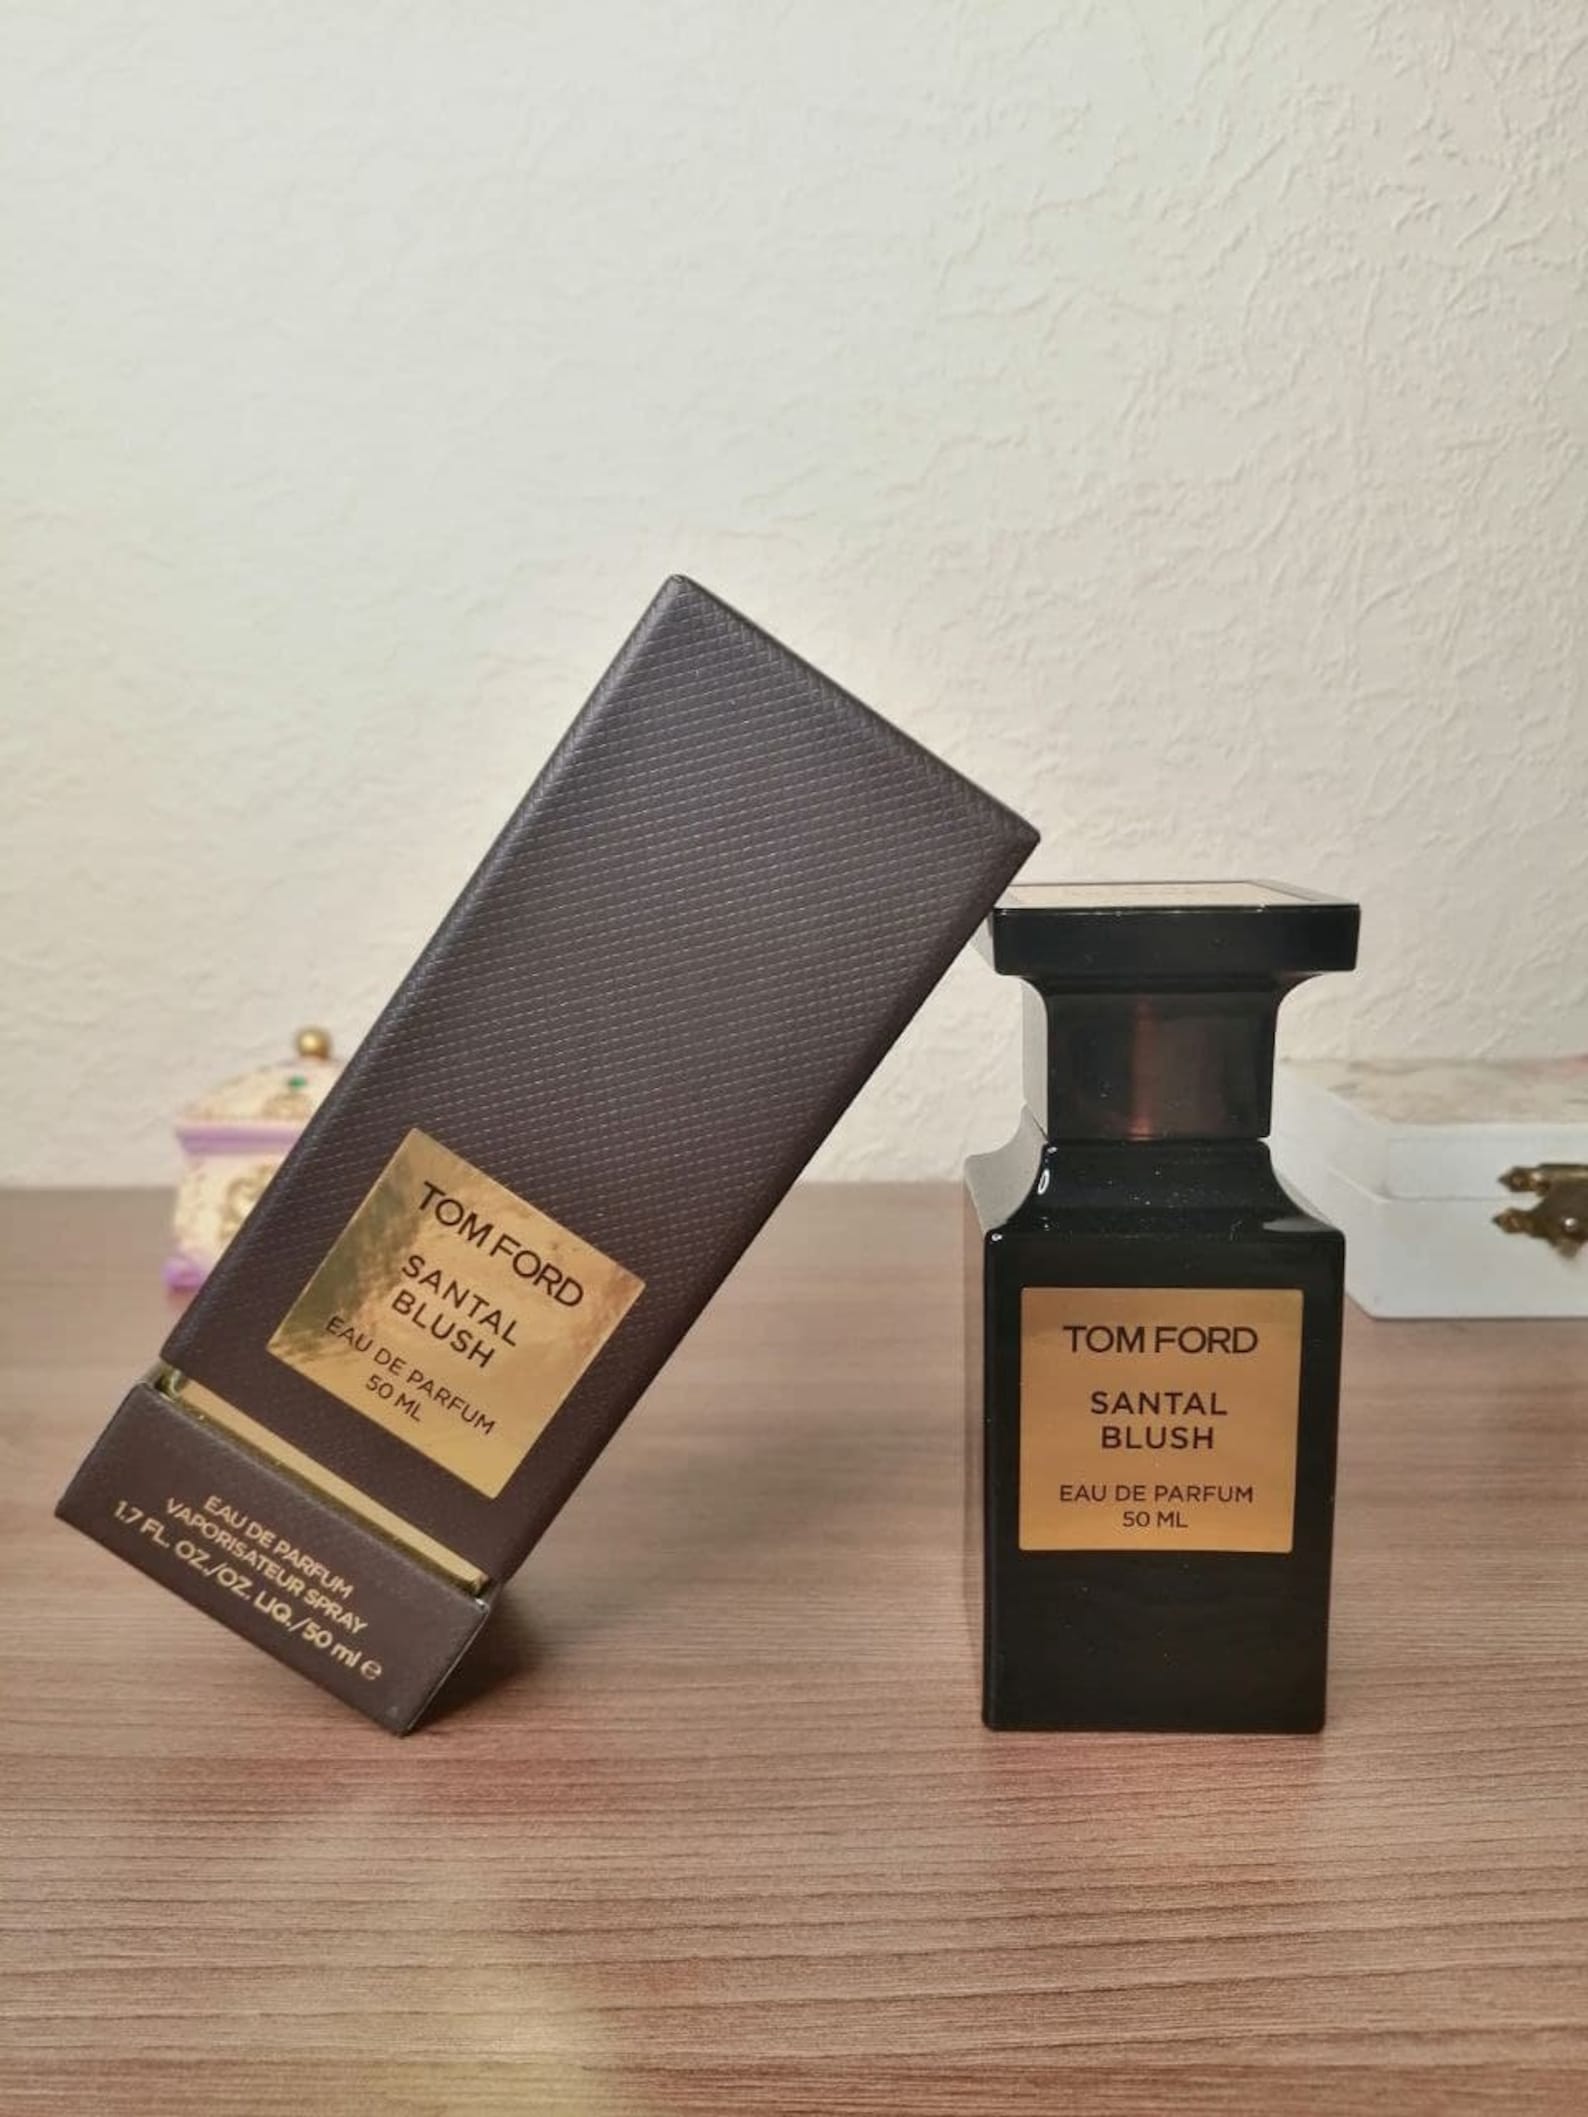 Tom Ford Santal Blush Eau de Perfume 5 ml/10 ml Travel size | Etsy